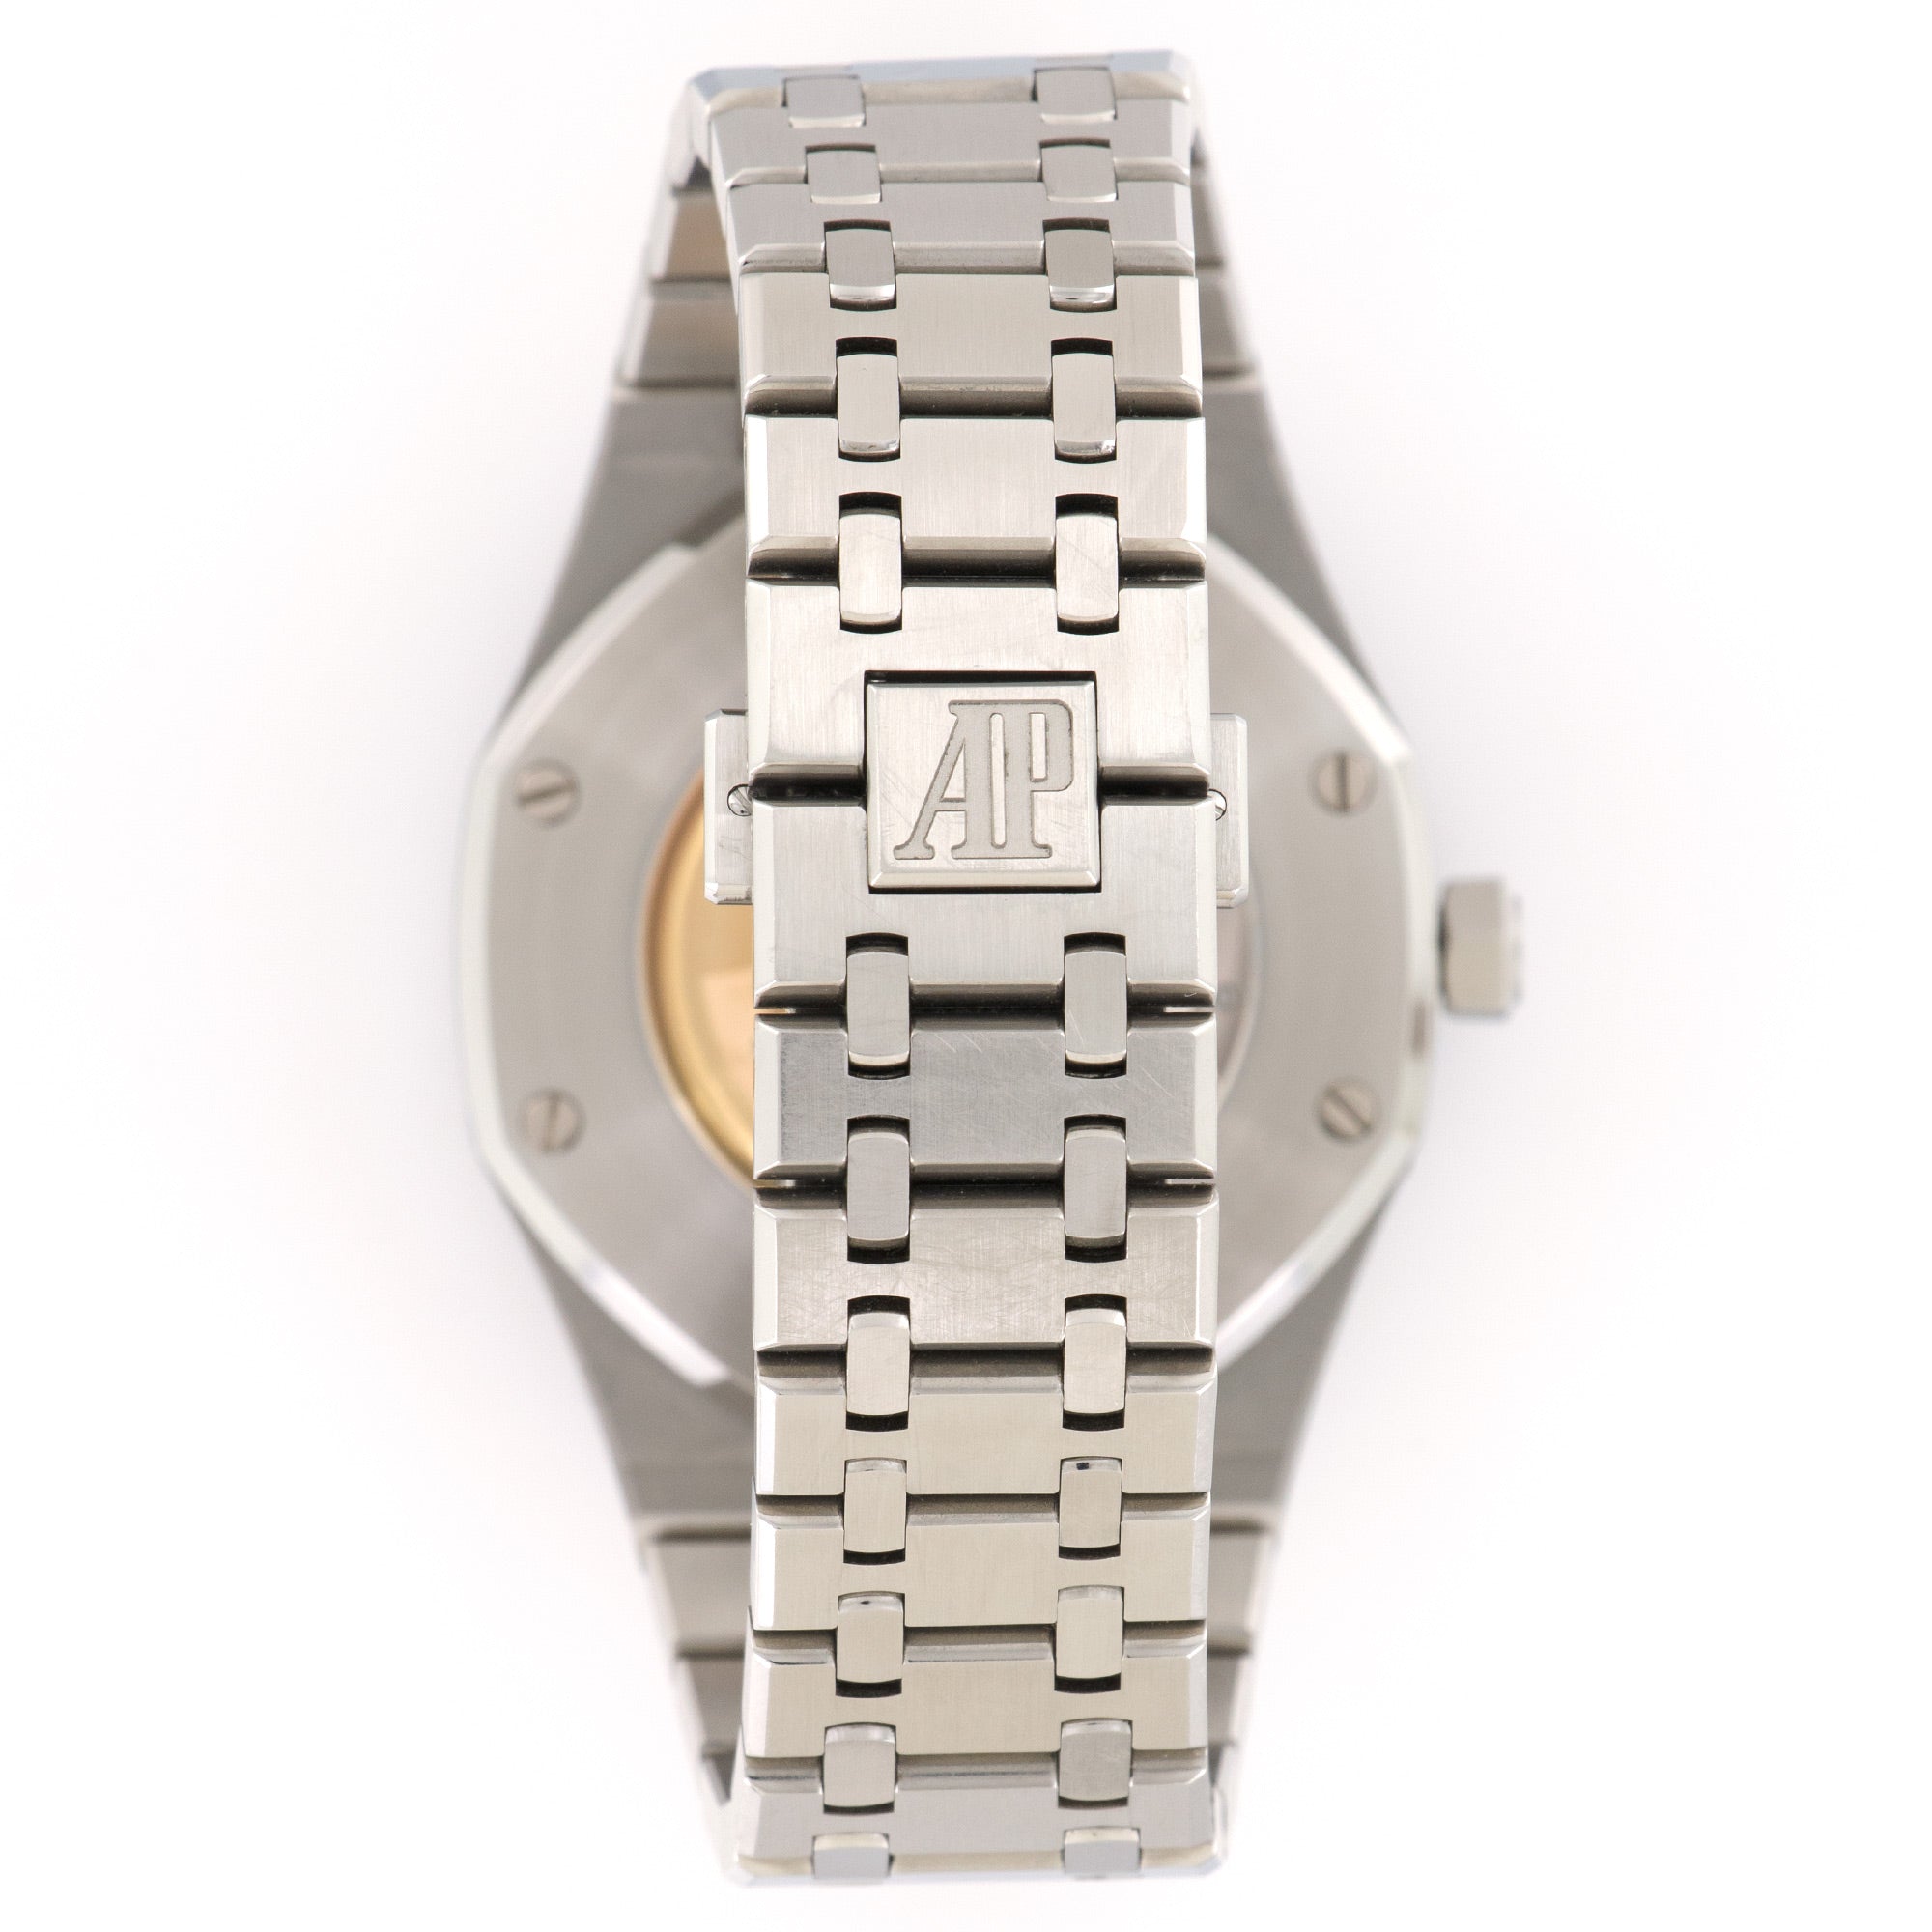 Audemars Piguet - Audemars Piguet Royal Oak Chronograph Watch, Ref. 26320ST - The Keystone Watches